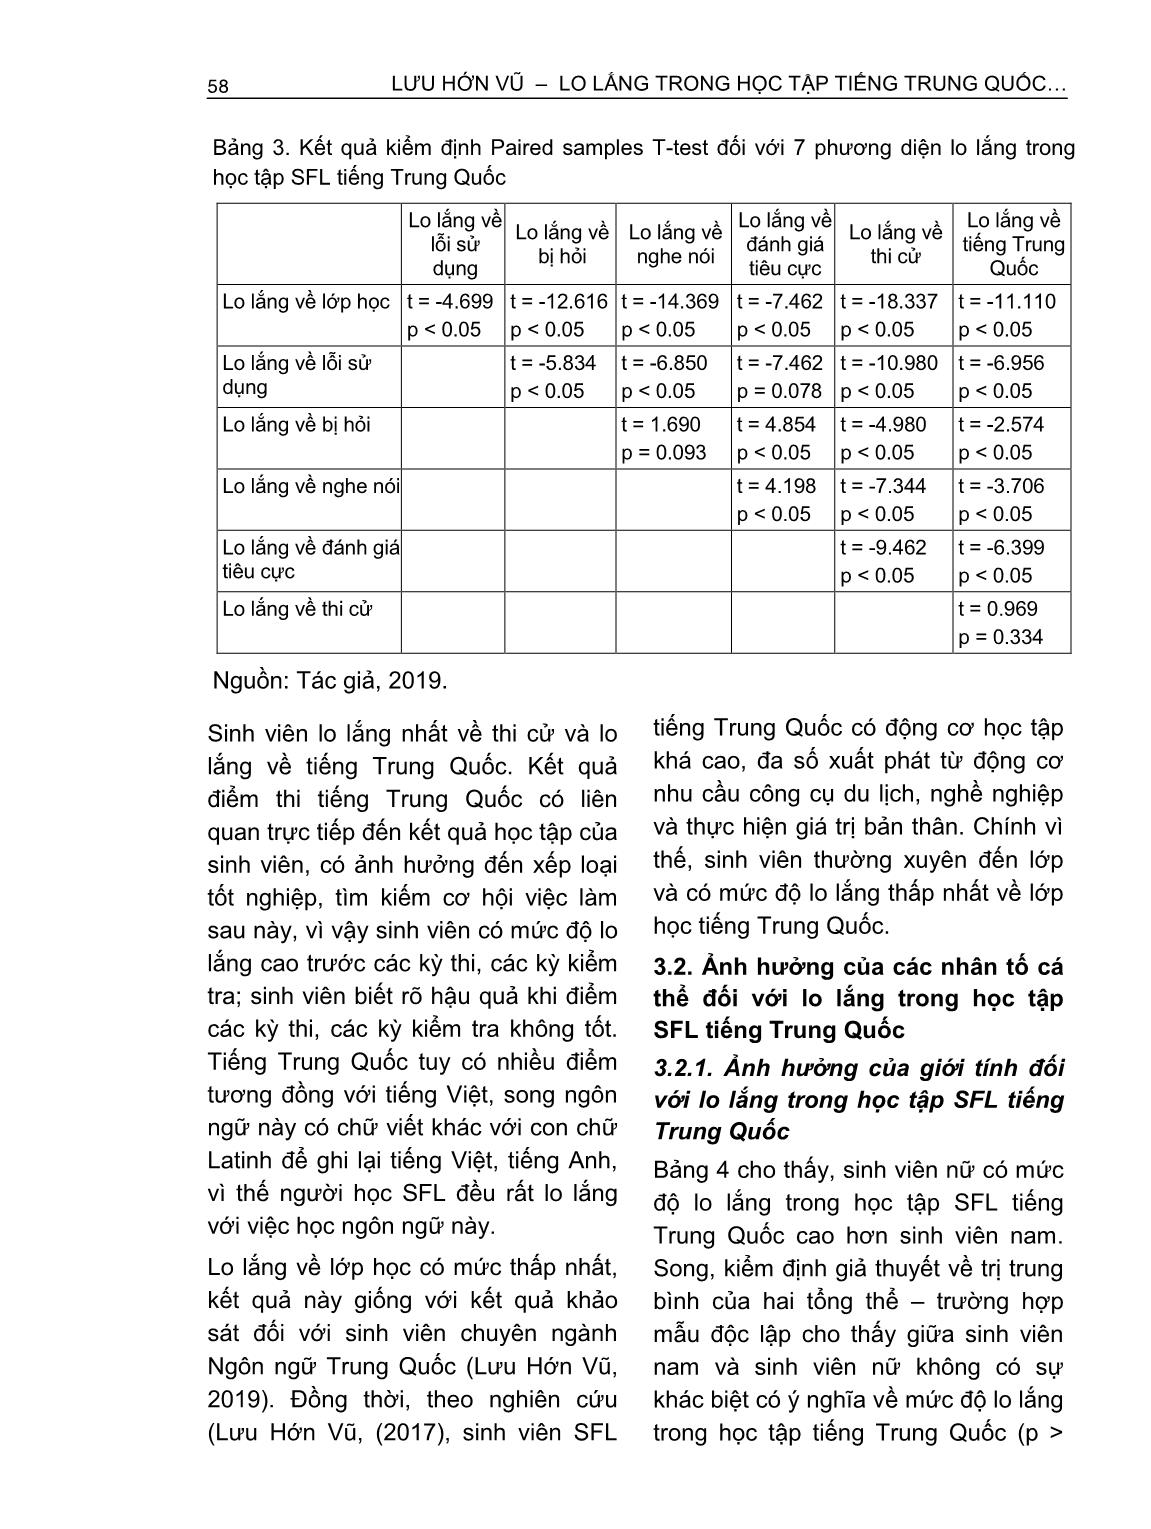 Lo lắng trong học tập tiếng Trung Quốc - Ngoại ngữ thứ hai của sinh viên ngành Ngôn ngữ anh (Trường hợp Trường Đại học Ngân hàng thành phố Hồ Chí Minh) trang 4